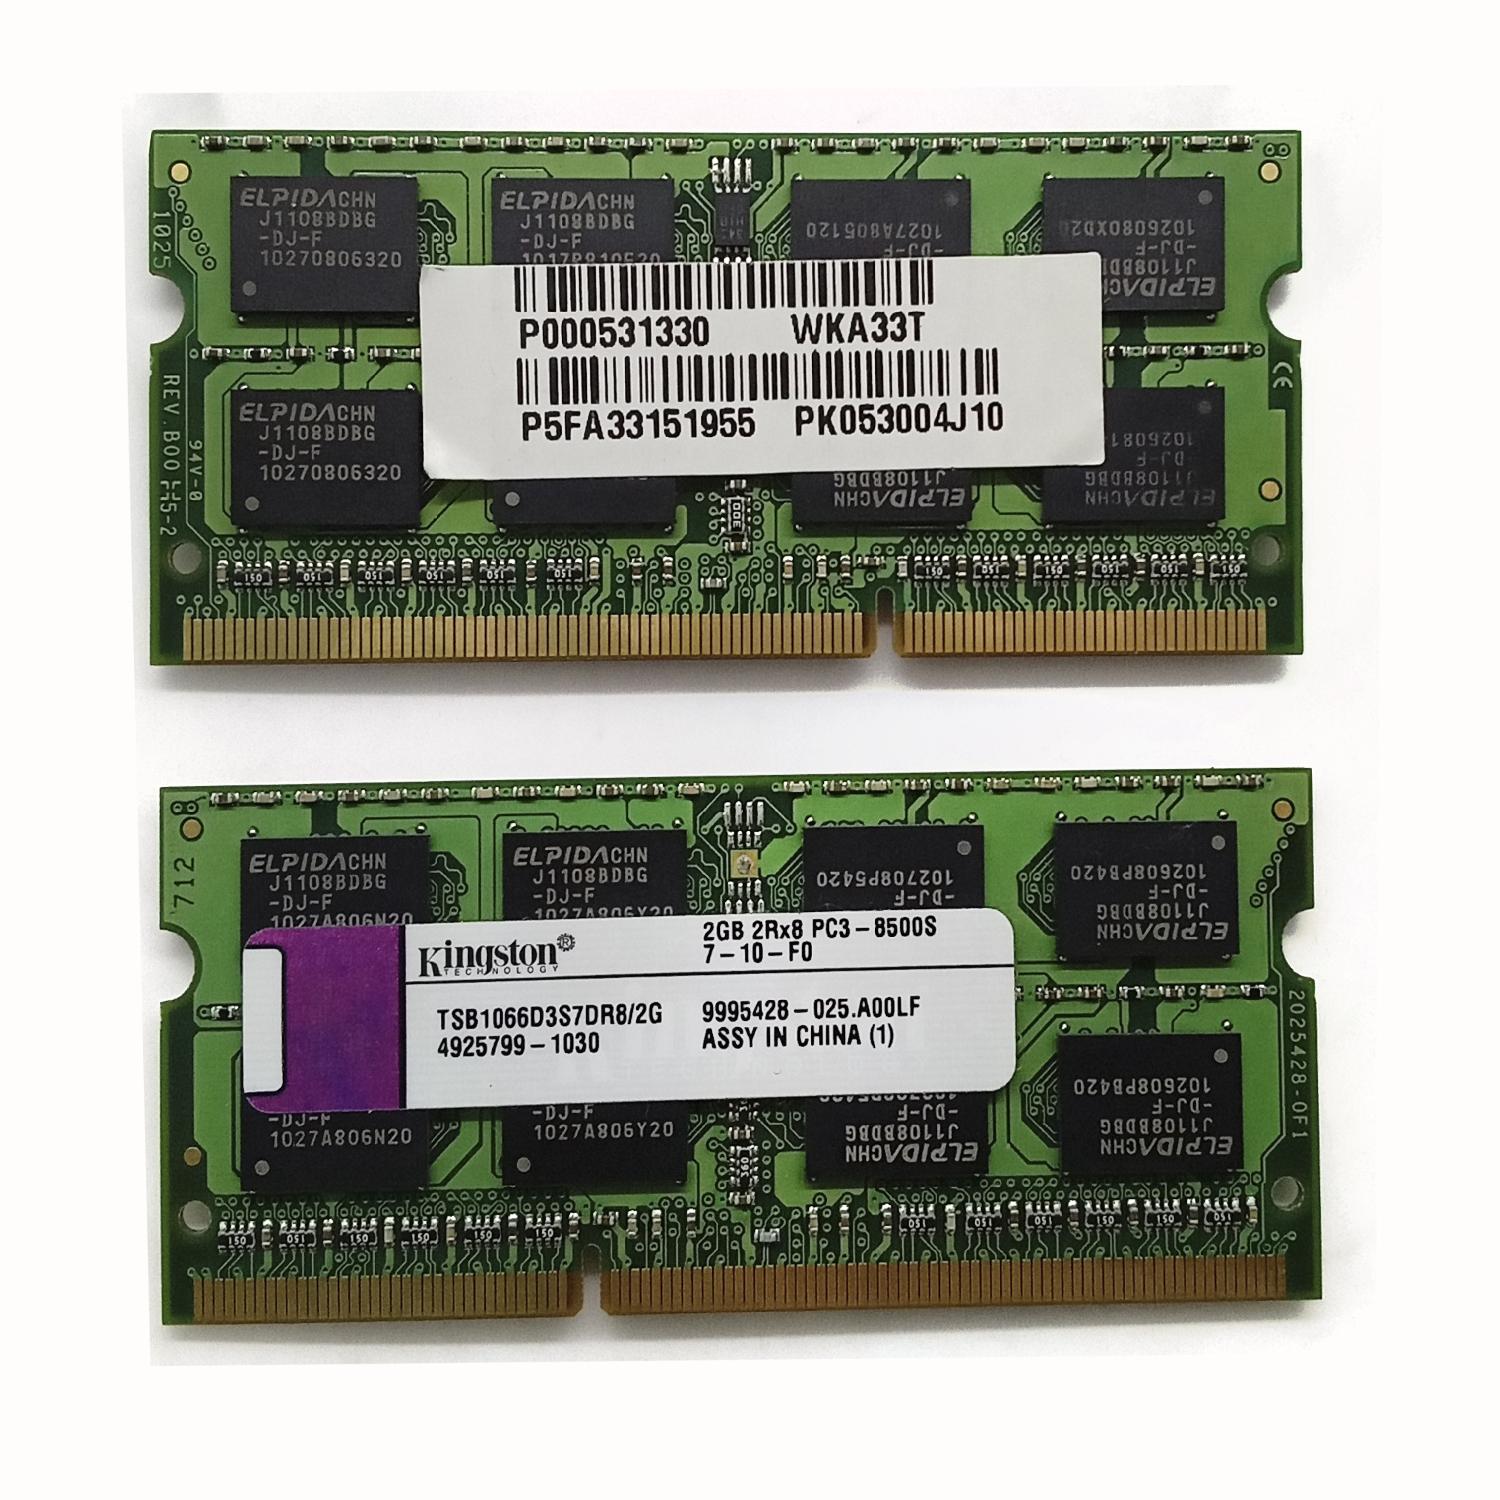 Оперативная память Kingston DDR3-1066 2Gb TSB1066D3S7DR8/2G 2GB 2Rx8 PC3-8500S 7-10-F0 б/у